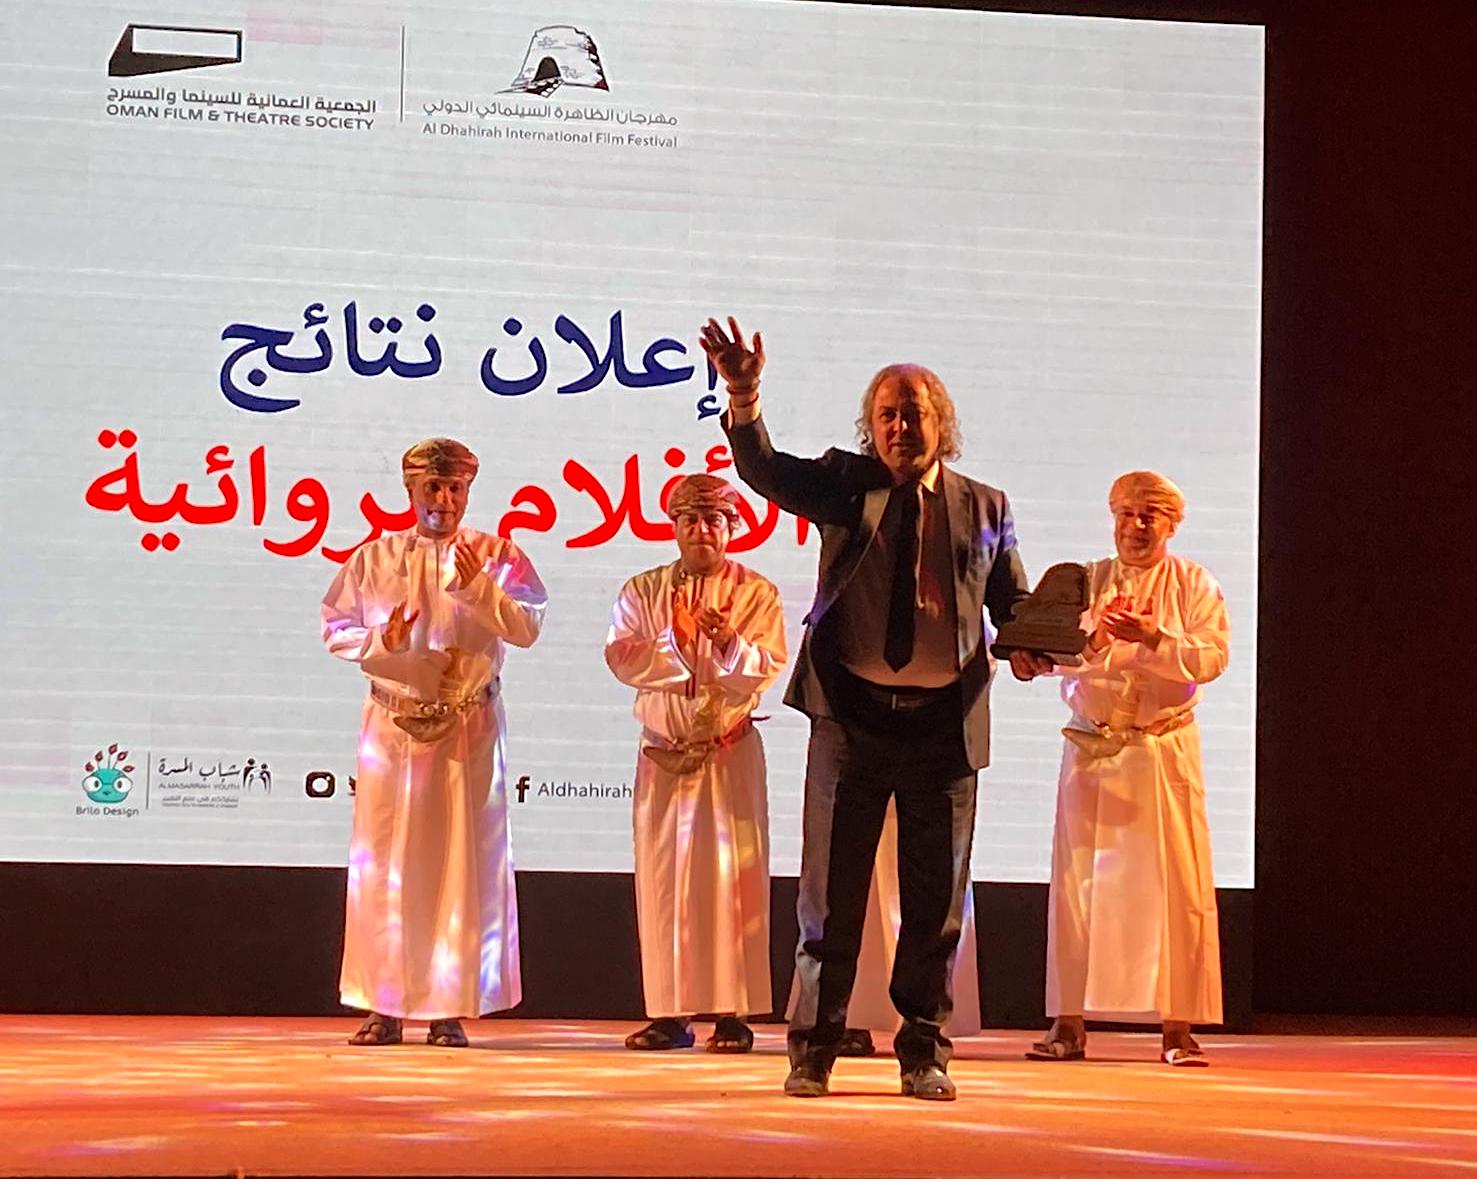 يوسف علاري يحصد الجائزة الأولى من مهرجان الظاهرة السينمائي الدولي عن فئة الأفلام الروائية ليكون فيلمه أفضل فيلم 4